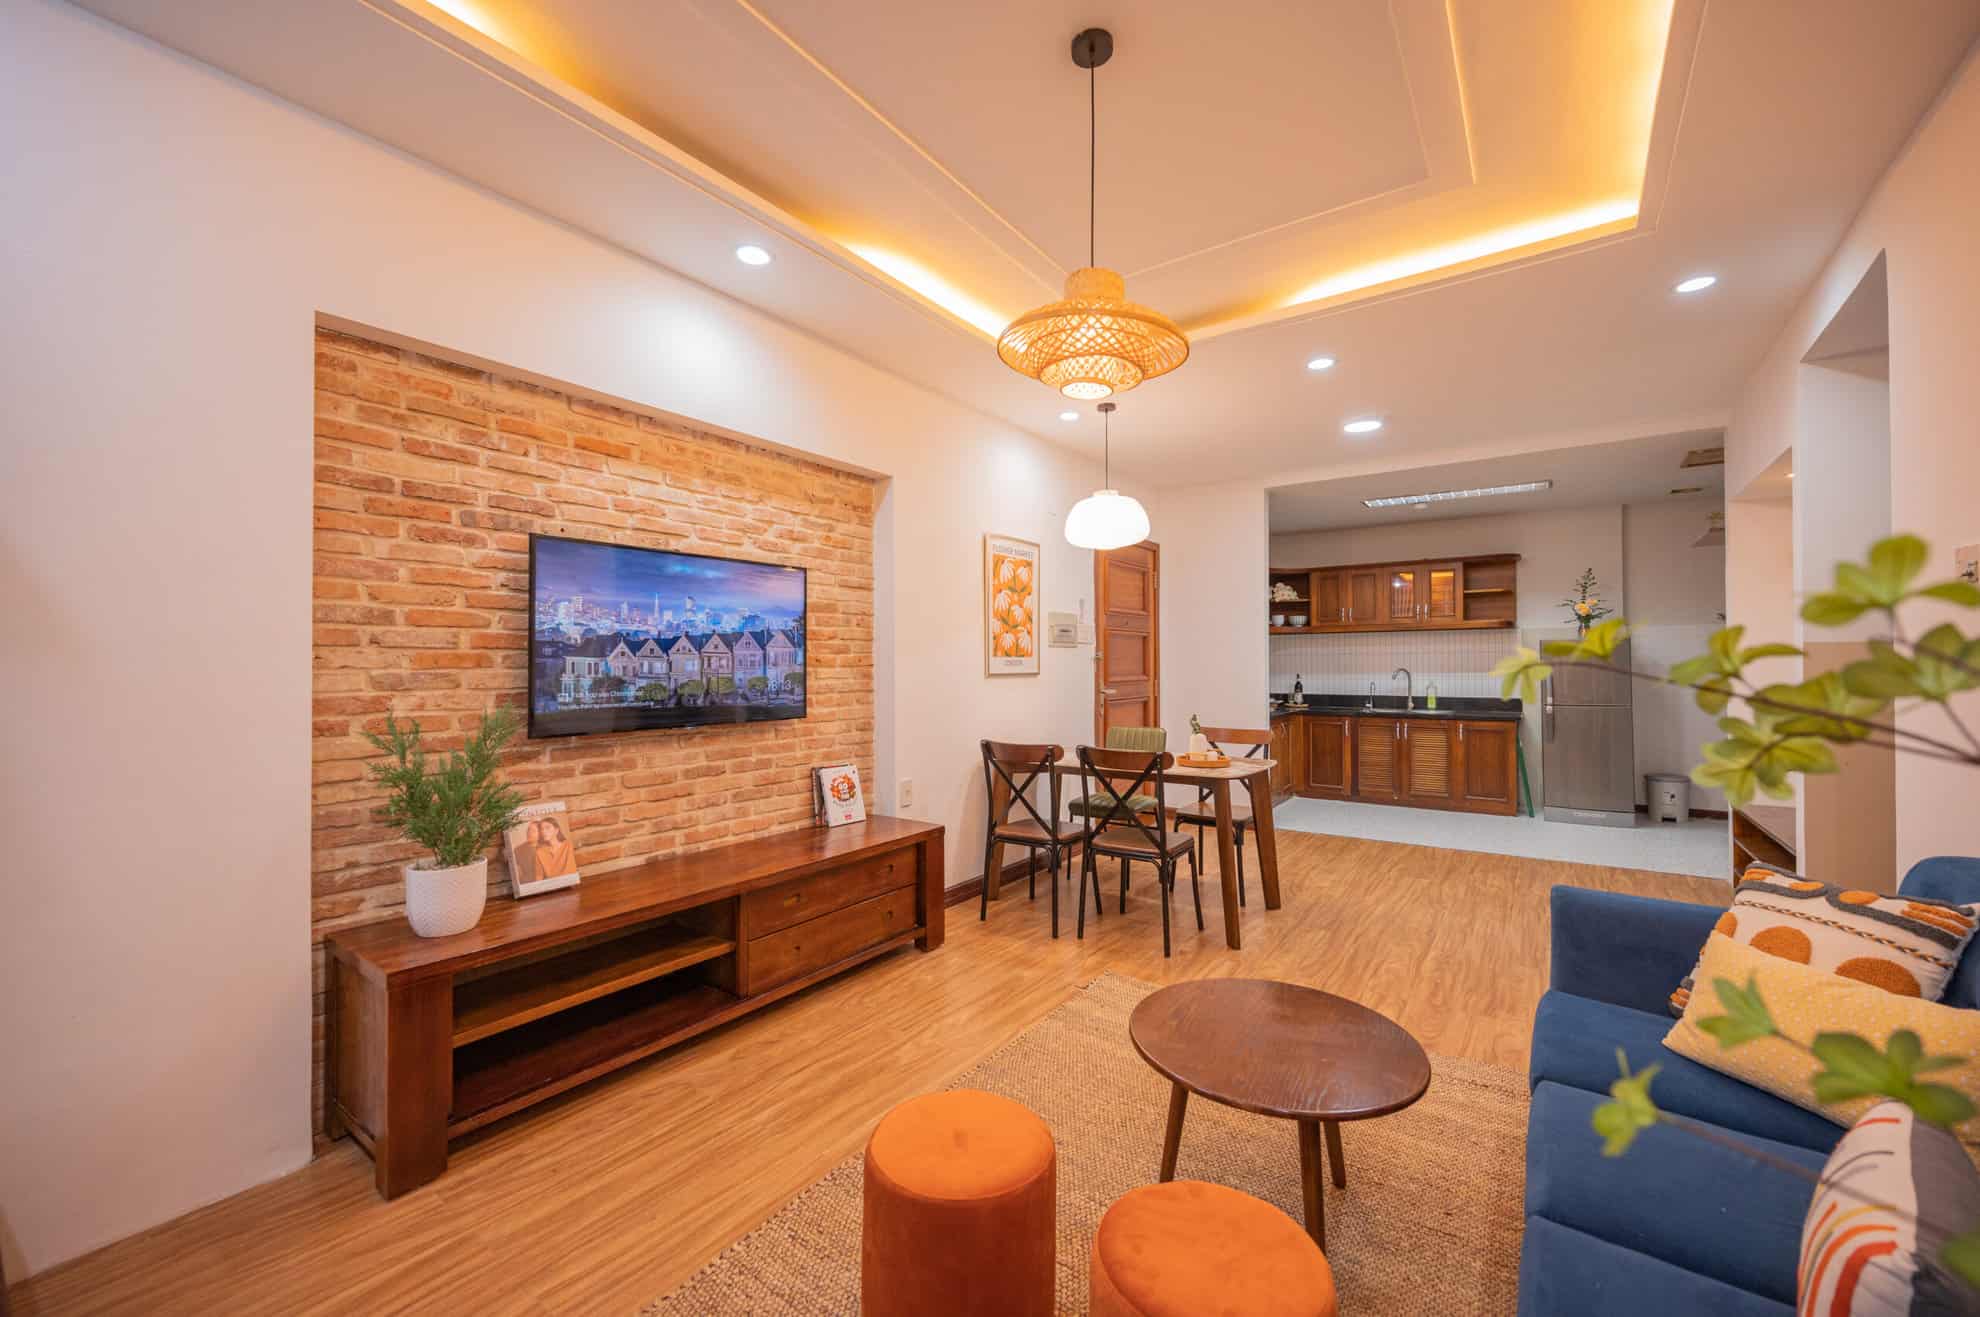 [3/2022] Dự án cải tạo căn hộ cho thuê du lịch tại Quy Nhơn - Before & After 20